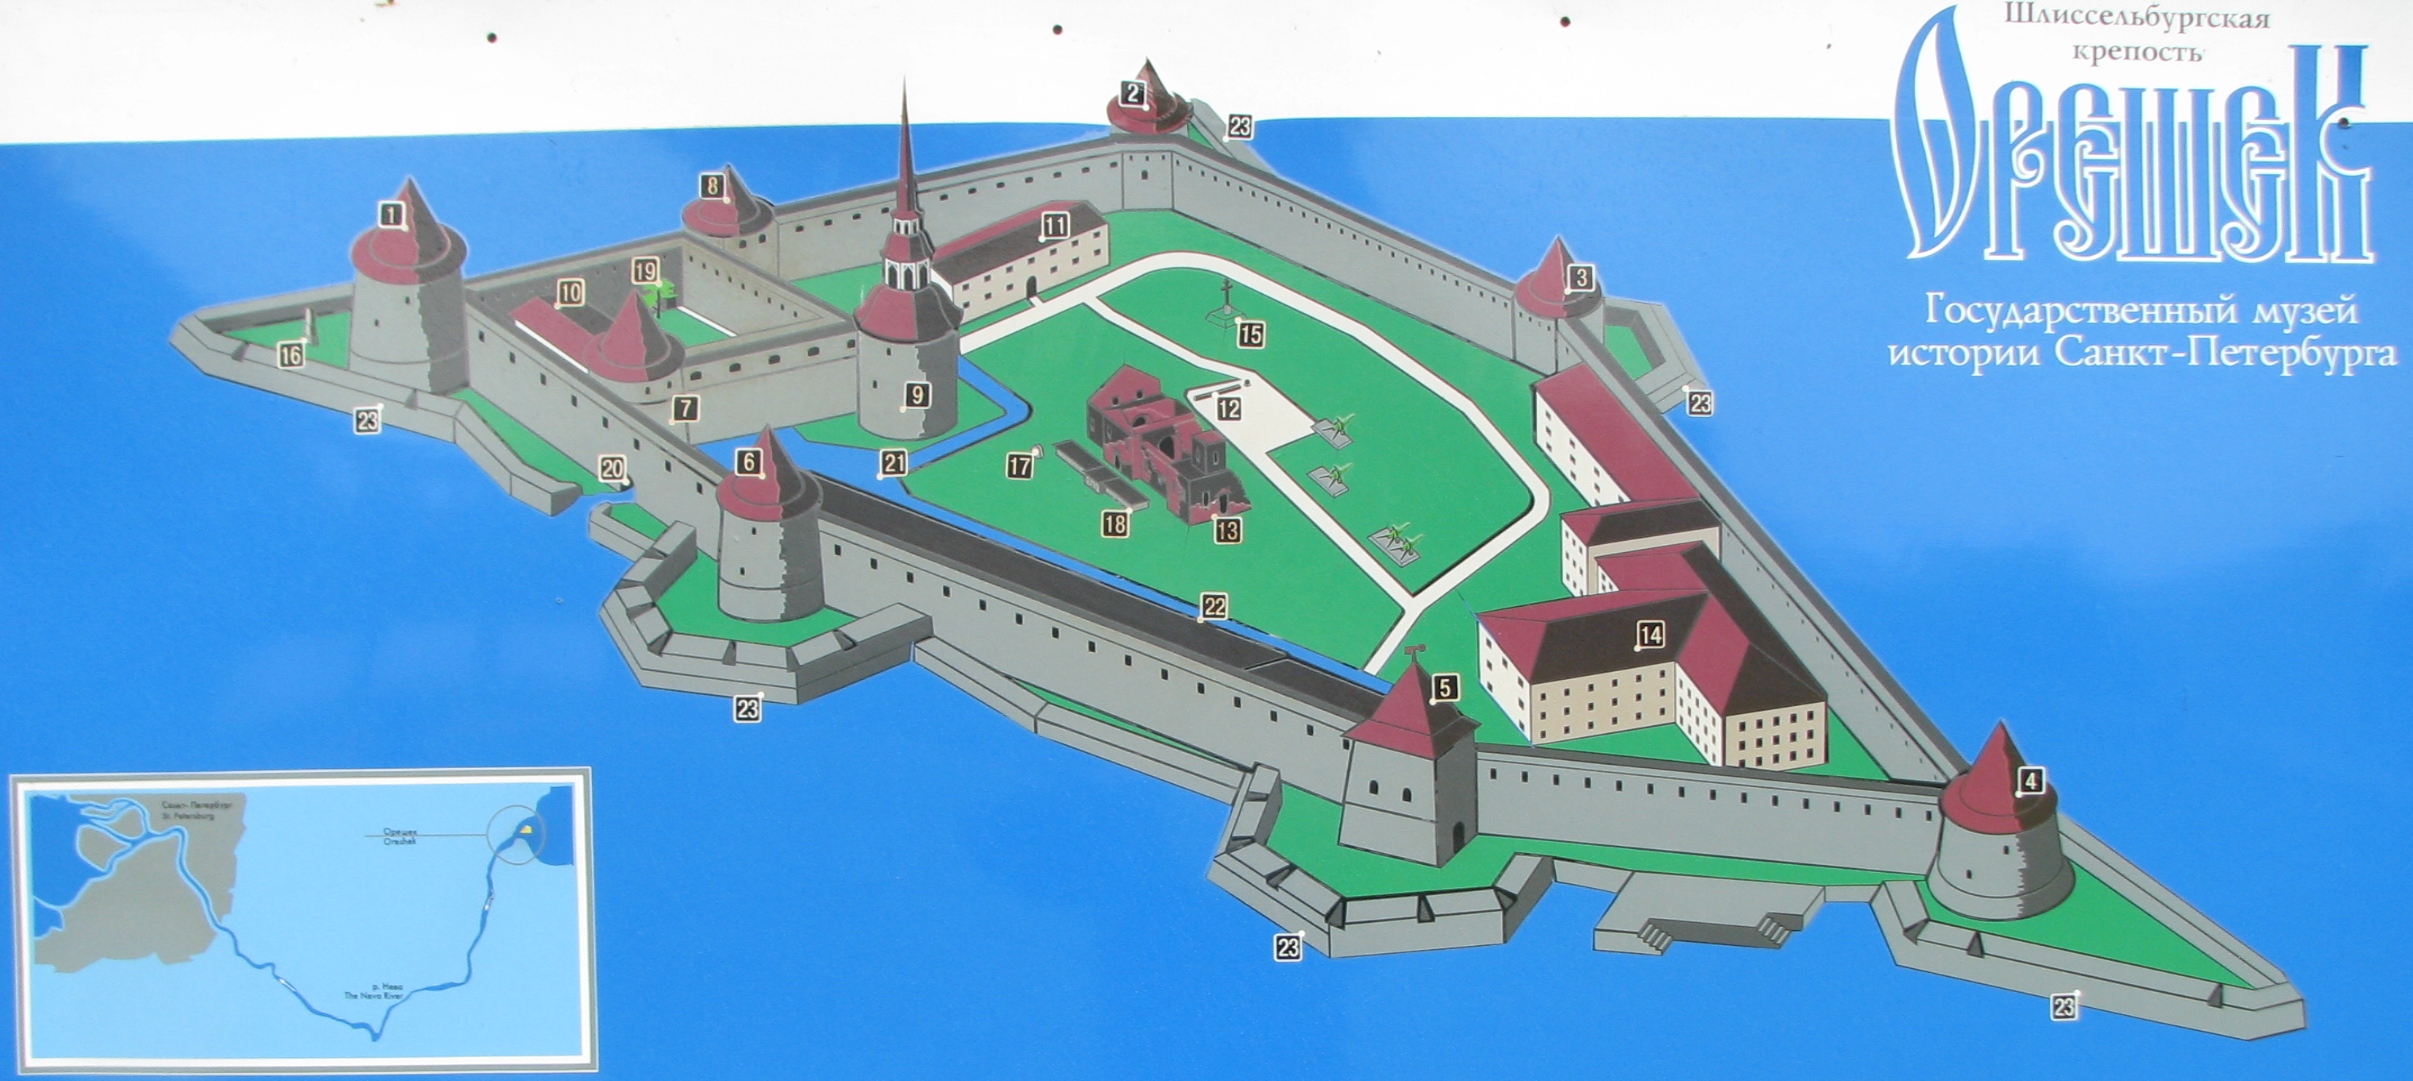 Шлиссельбургская крепость схема